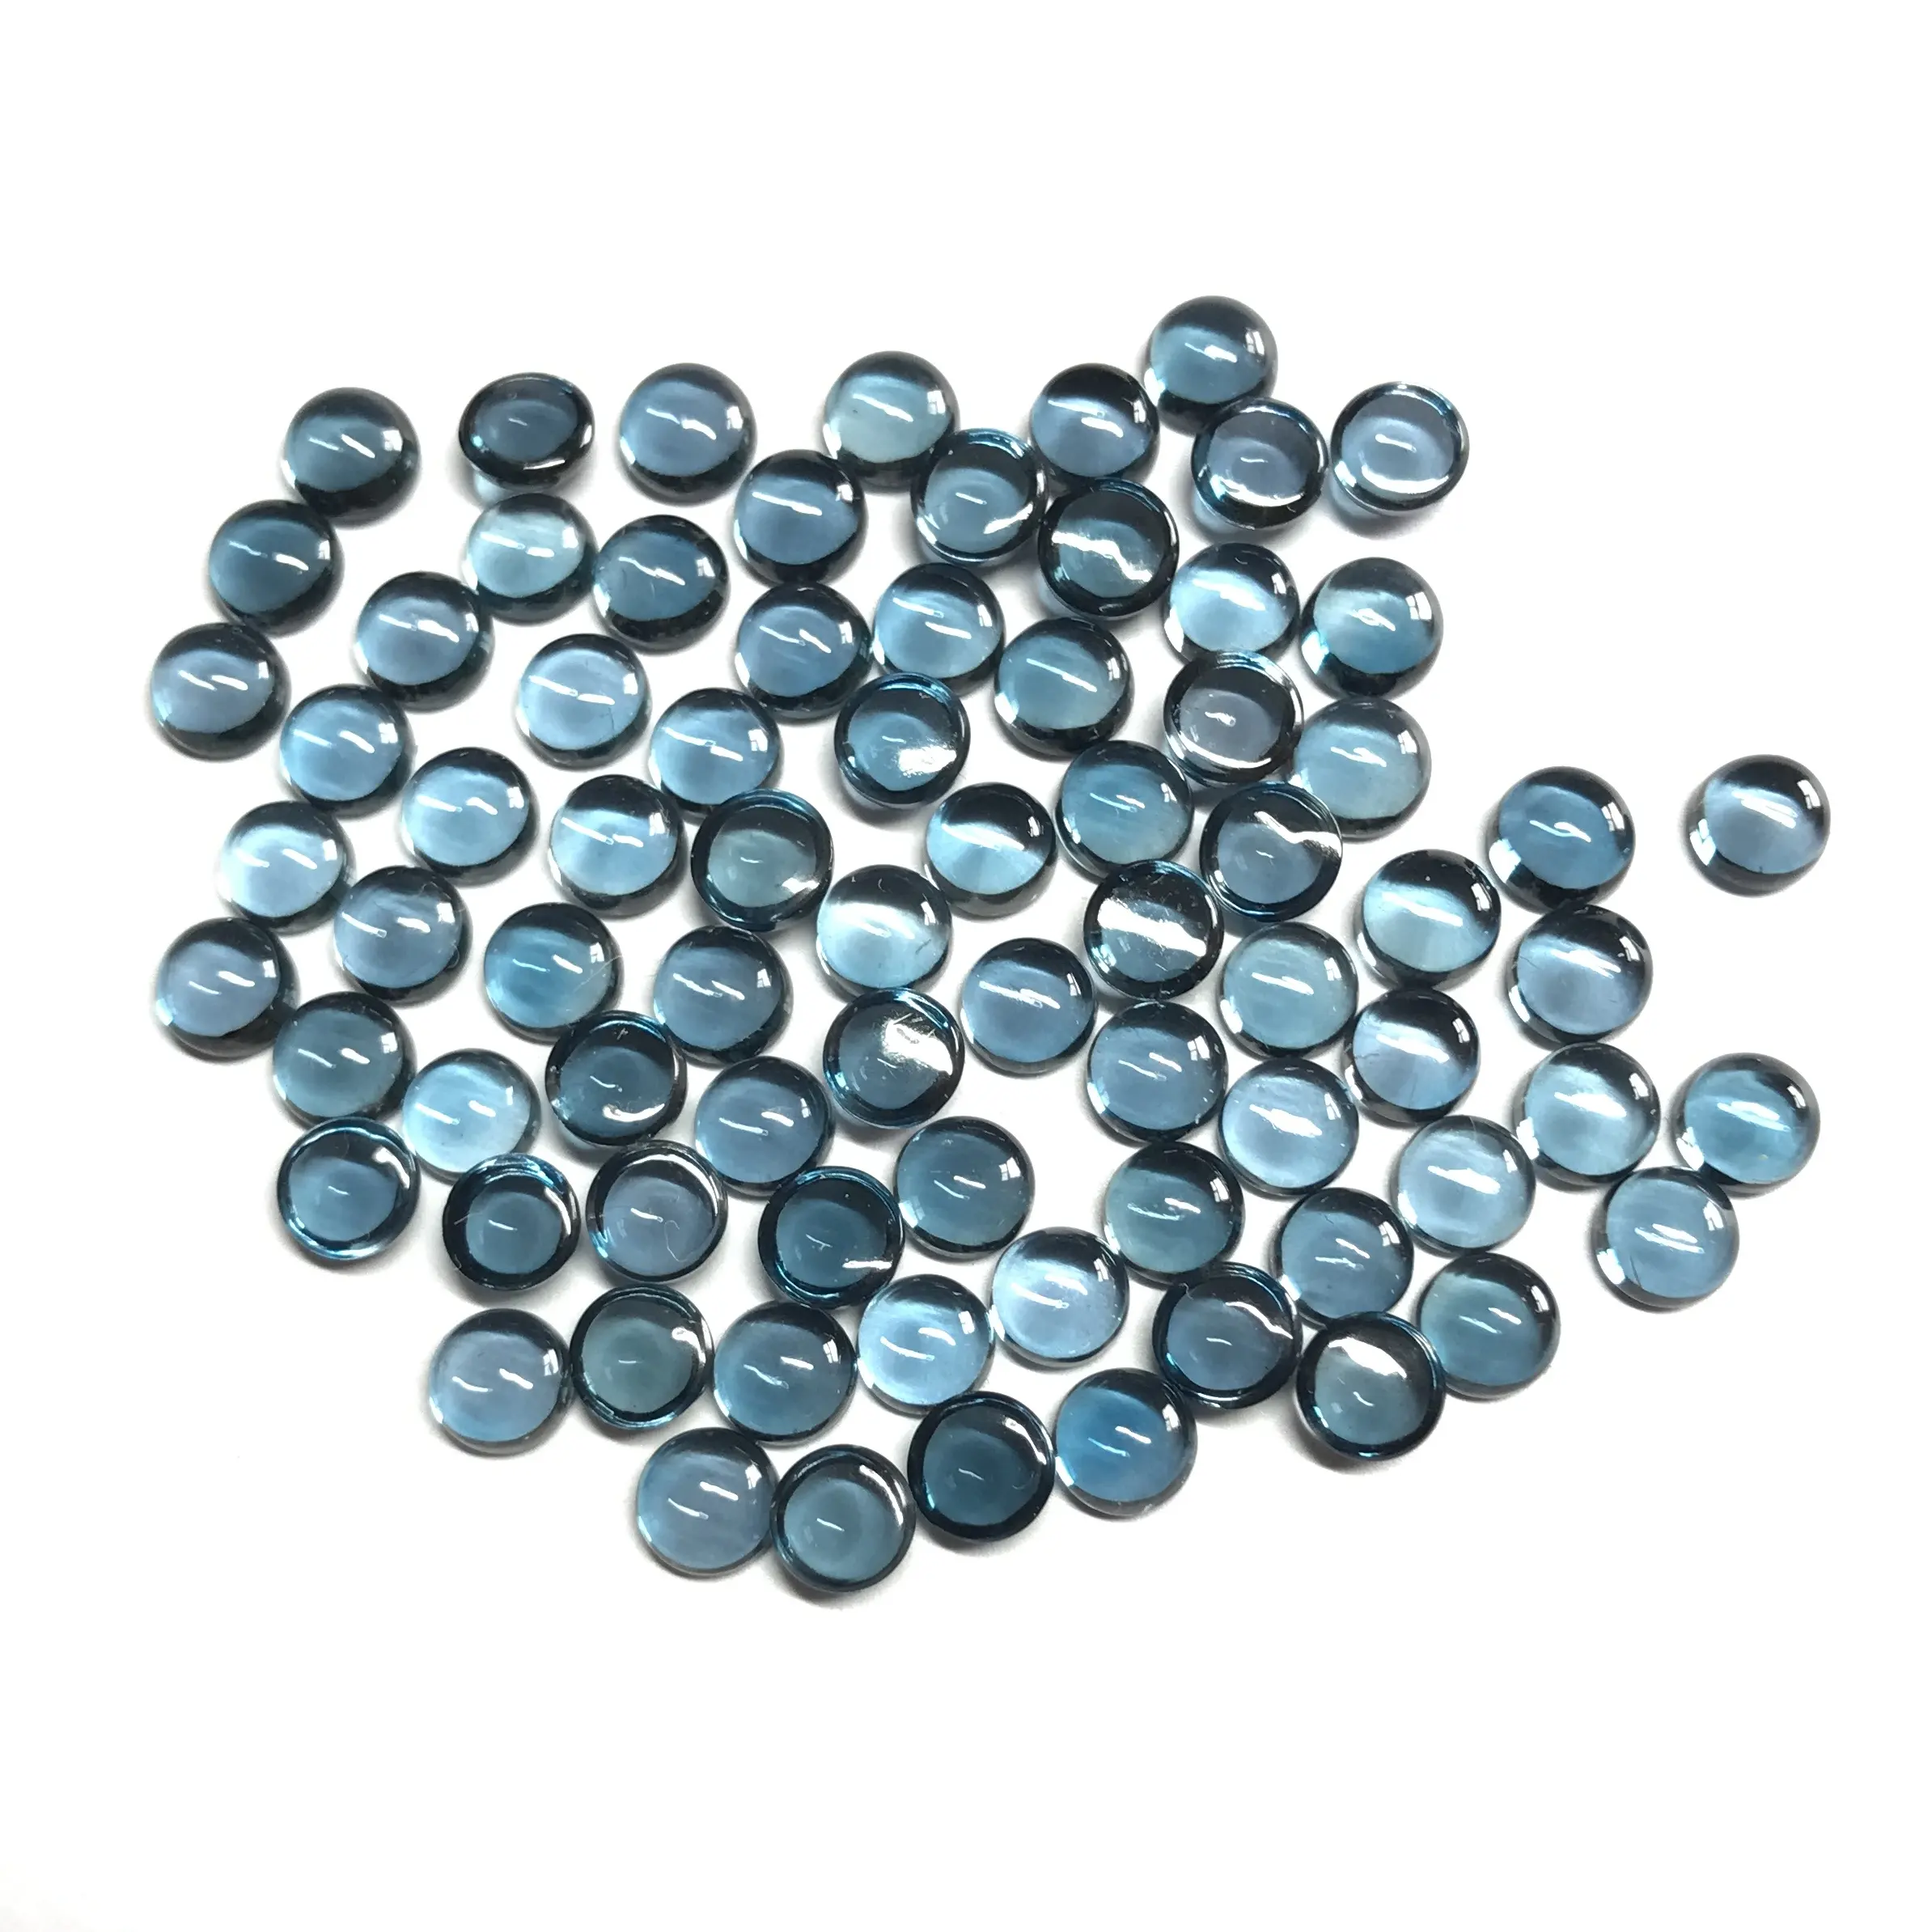 Pedra preciosa longa azul natural topaz 5mm, solta redonda cabochão